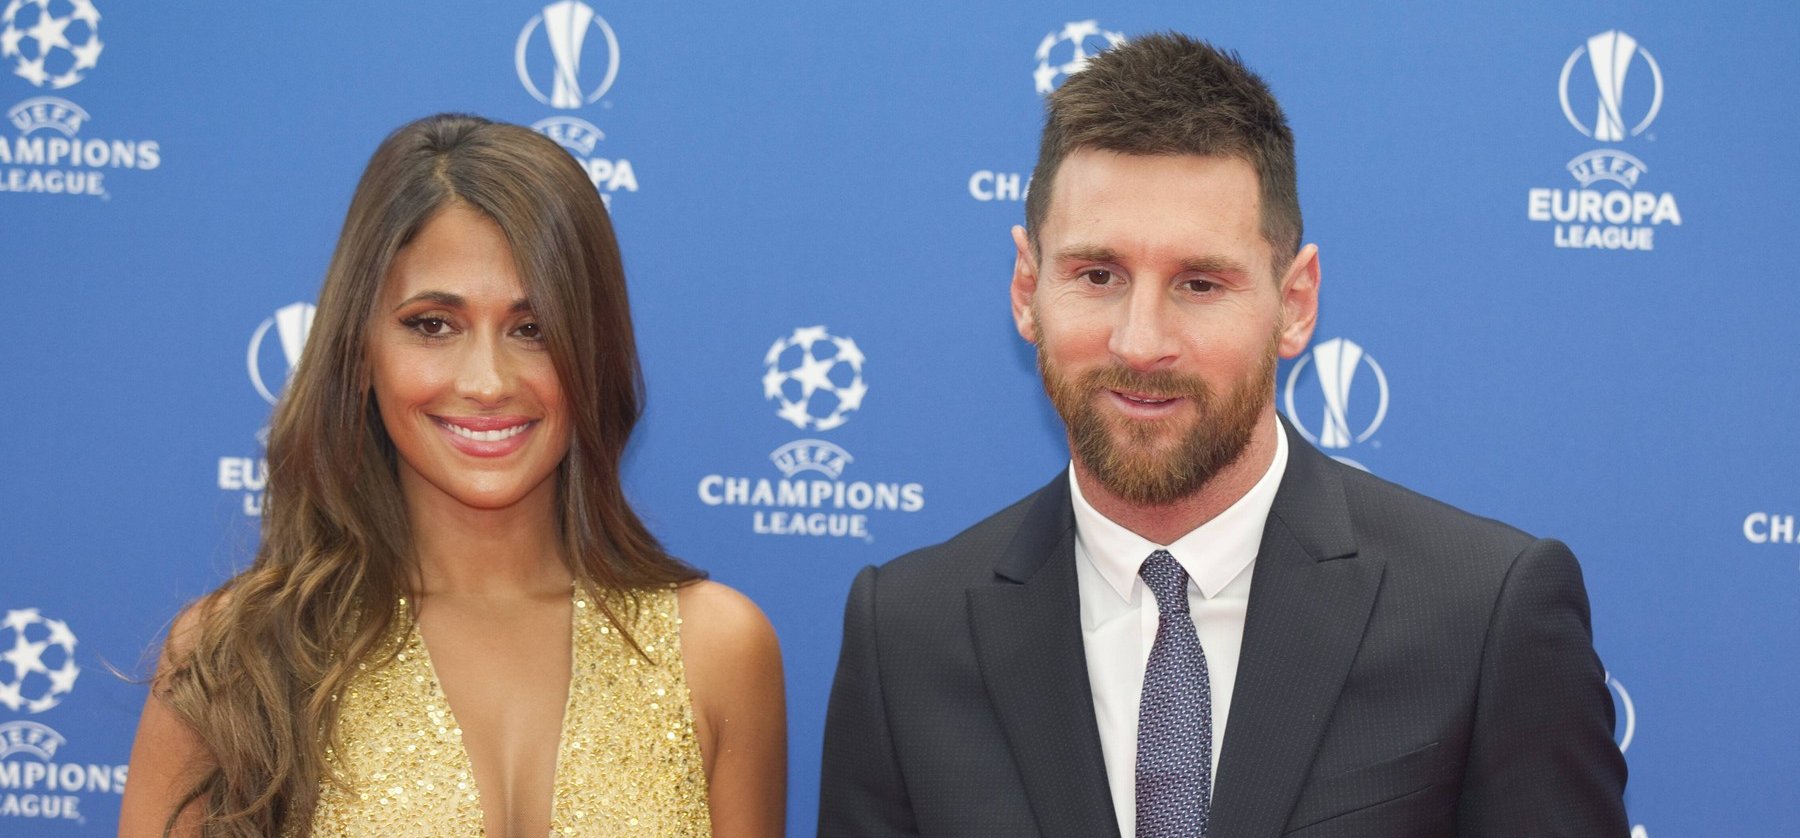 Messi gólja a csúcsra juttatta feleségét, földöntúli ovációval ünnepelte férje lövését